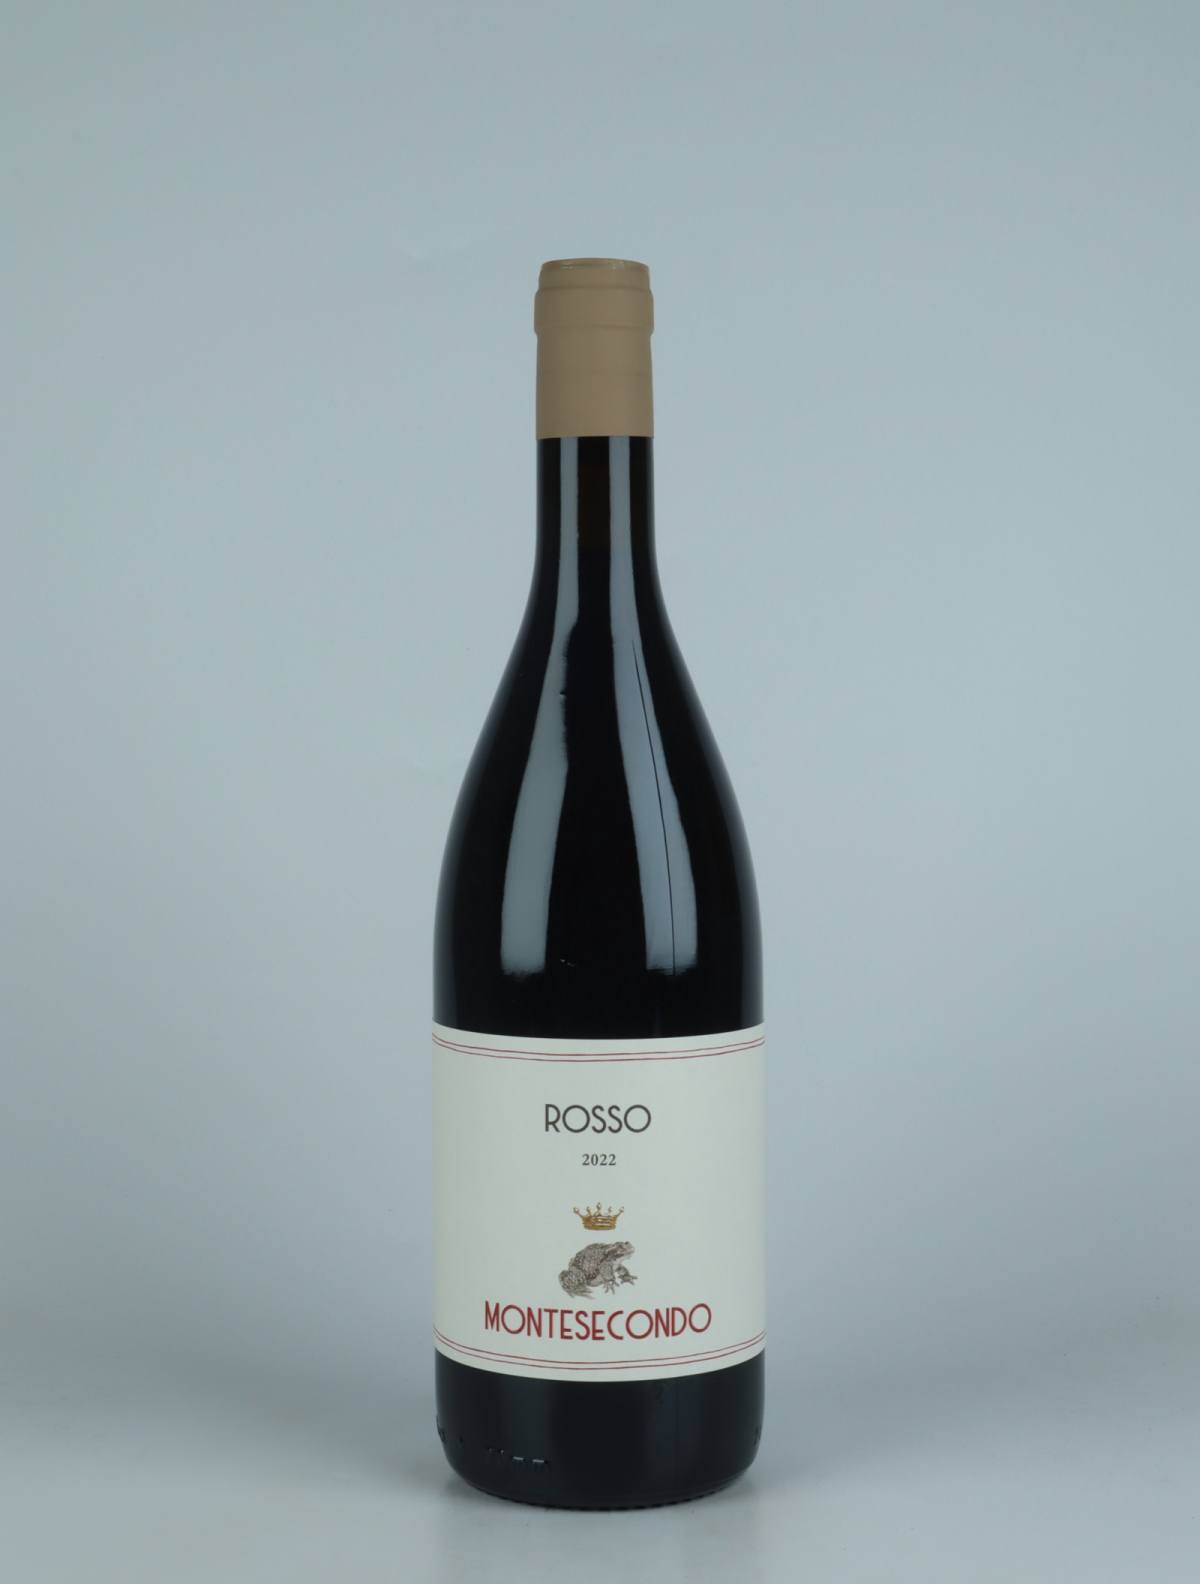 En flaske 2022 Rosso - Sangiovese Rødvin fra Montesecondo, Toscana i Italien